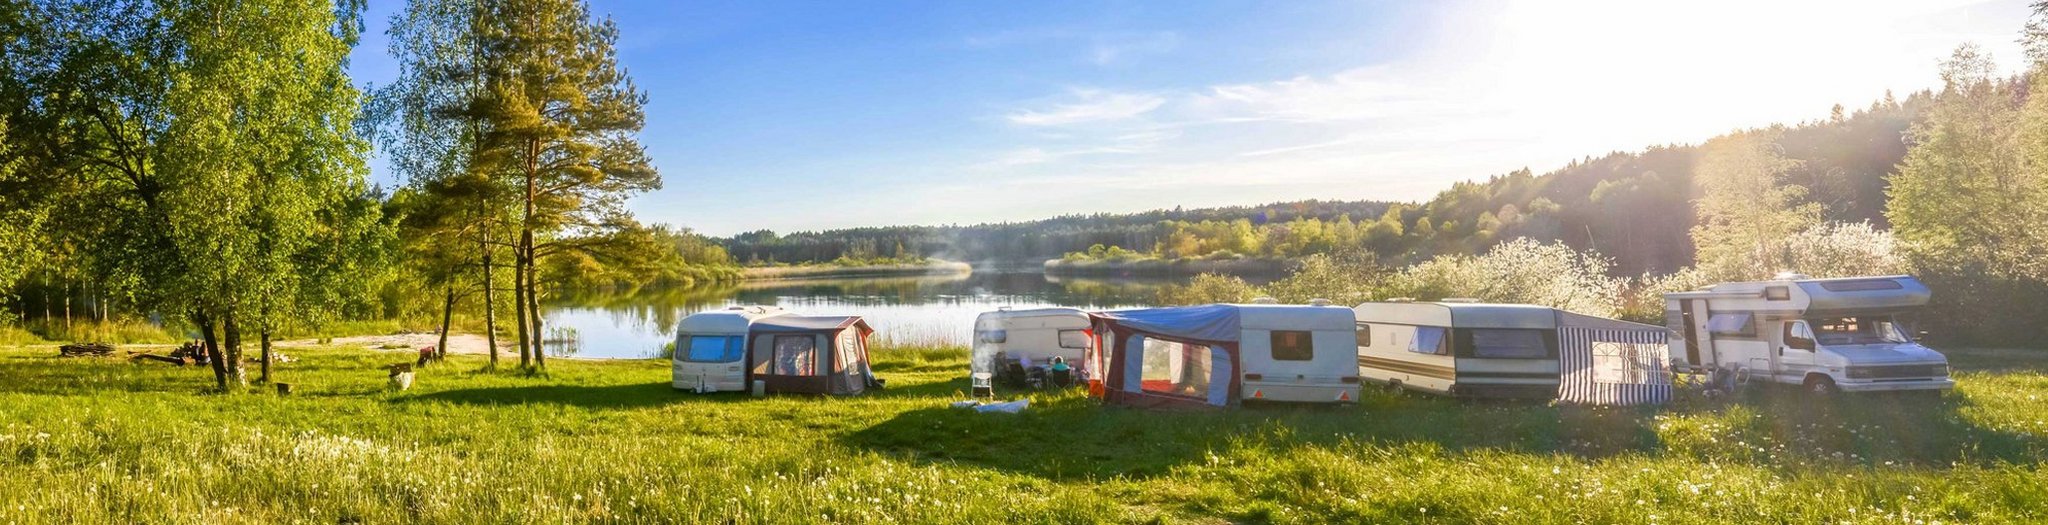 Das Bild zeigt Wohnwagen und Camper in einer idyllischen Seenlandschaft